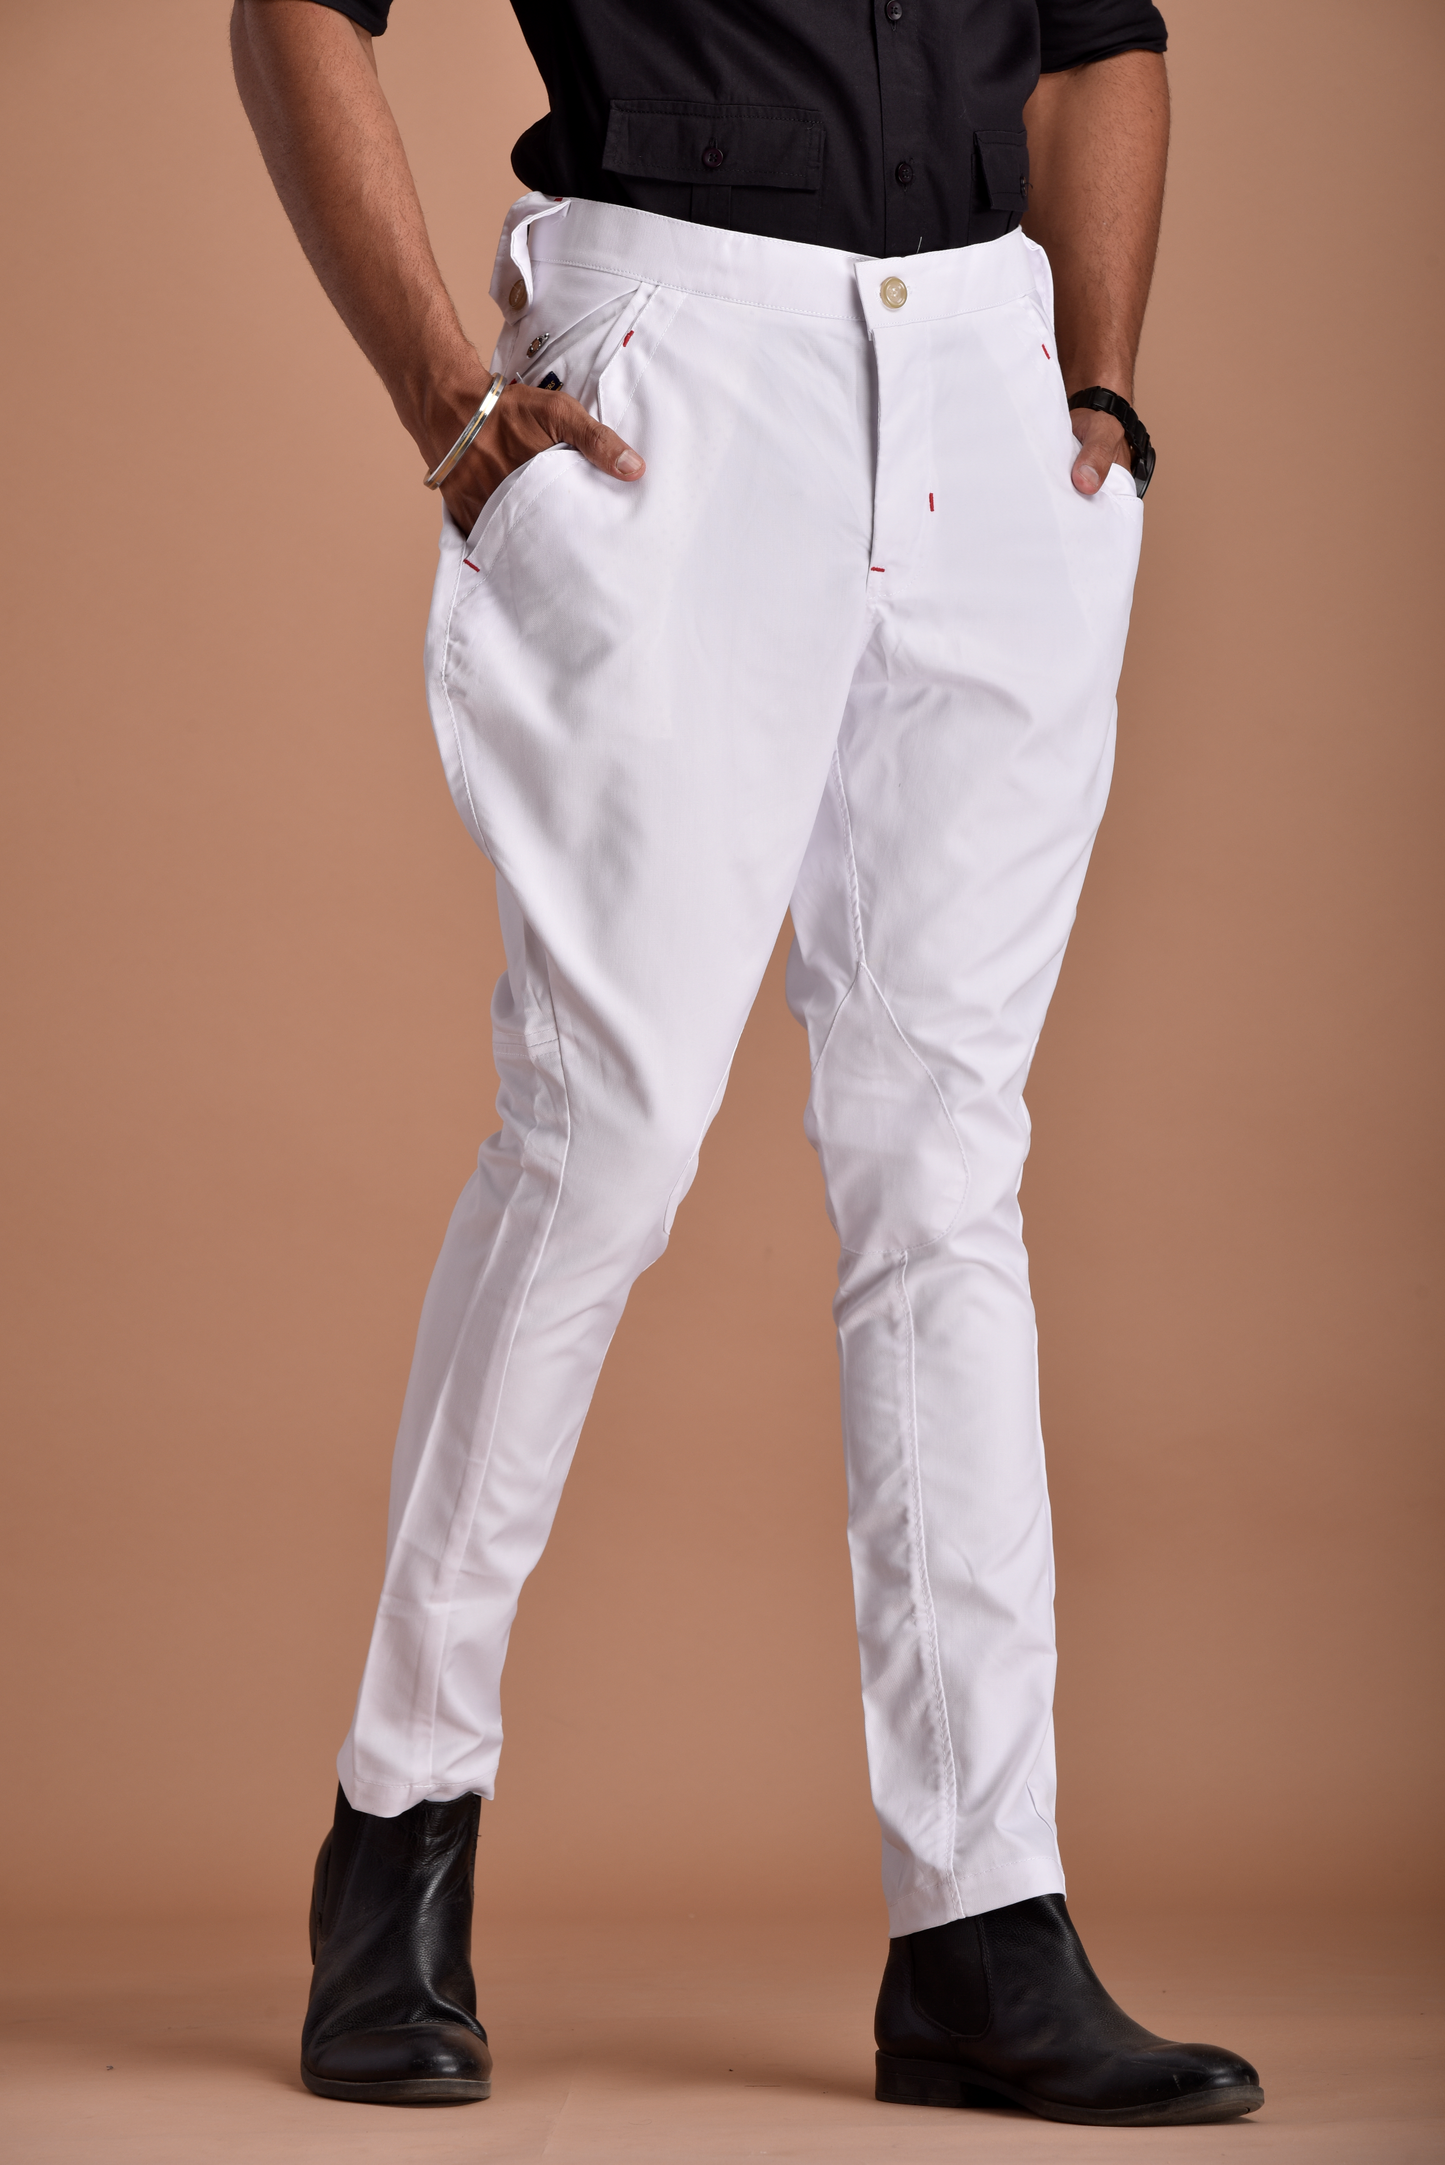 Classic and Stylish White Jodhpuri Breeches